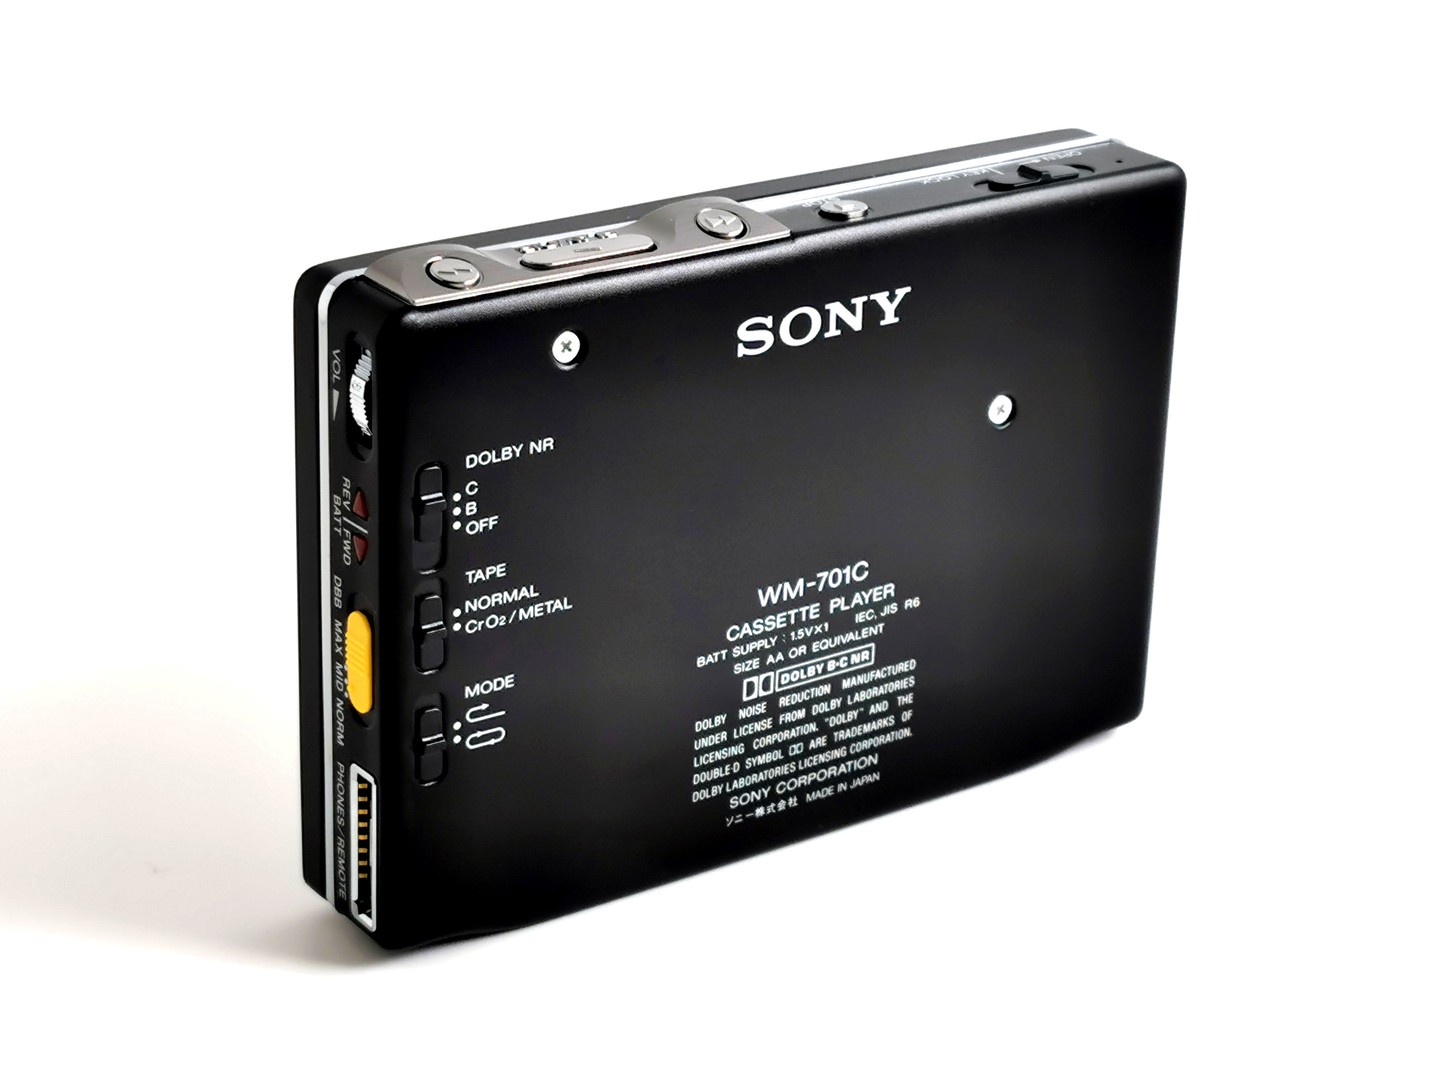 Sony_WM-701C_-_Angled_rear_ig-boxedwalkman